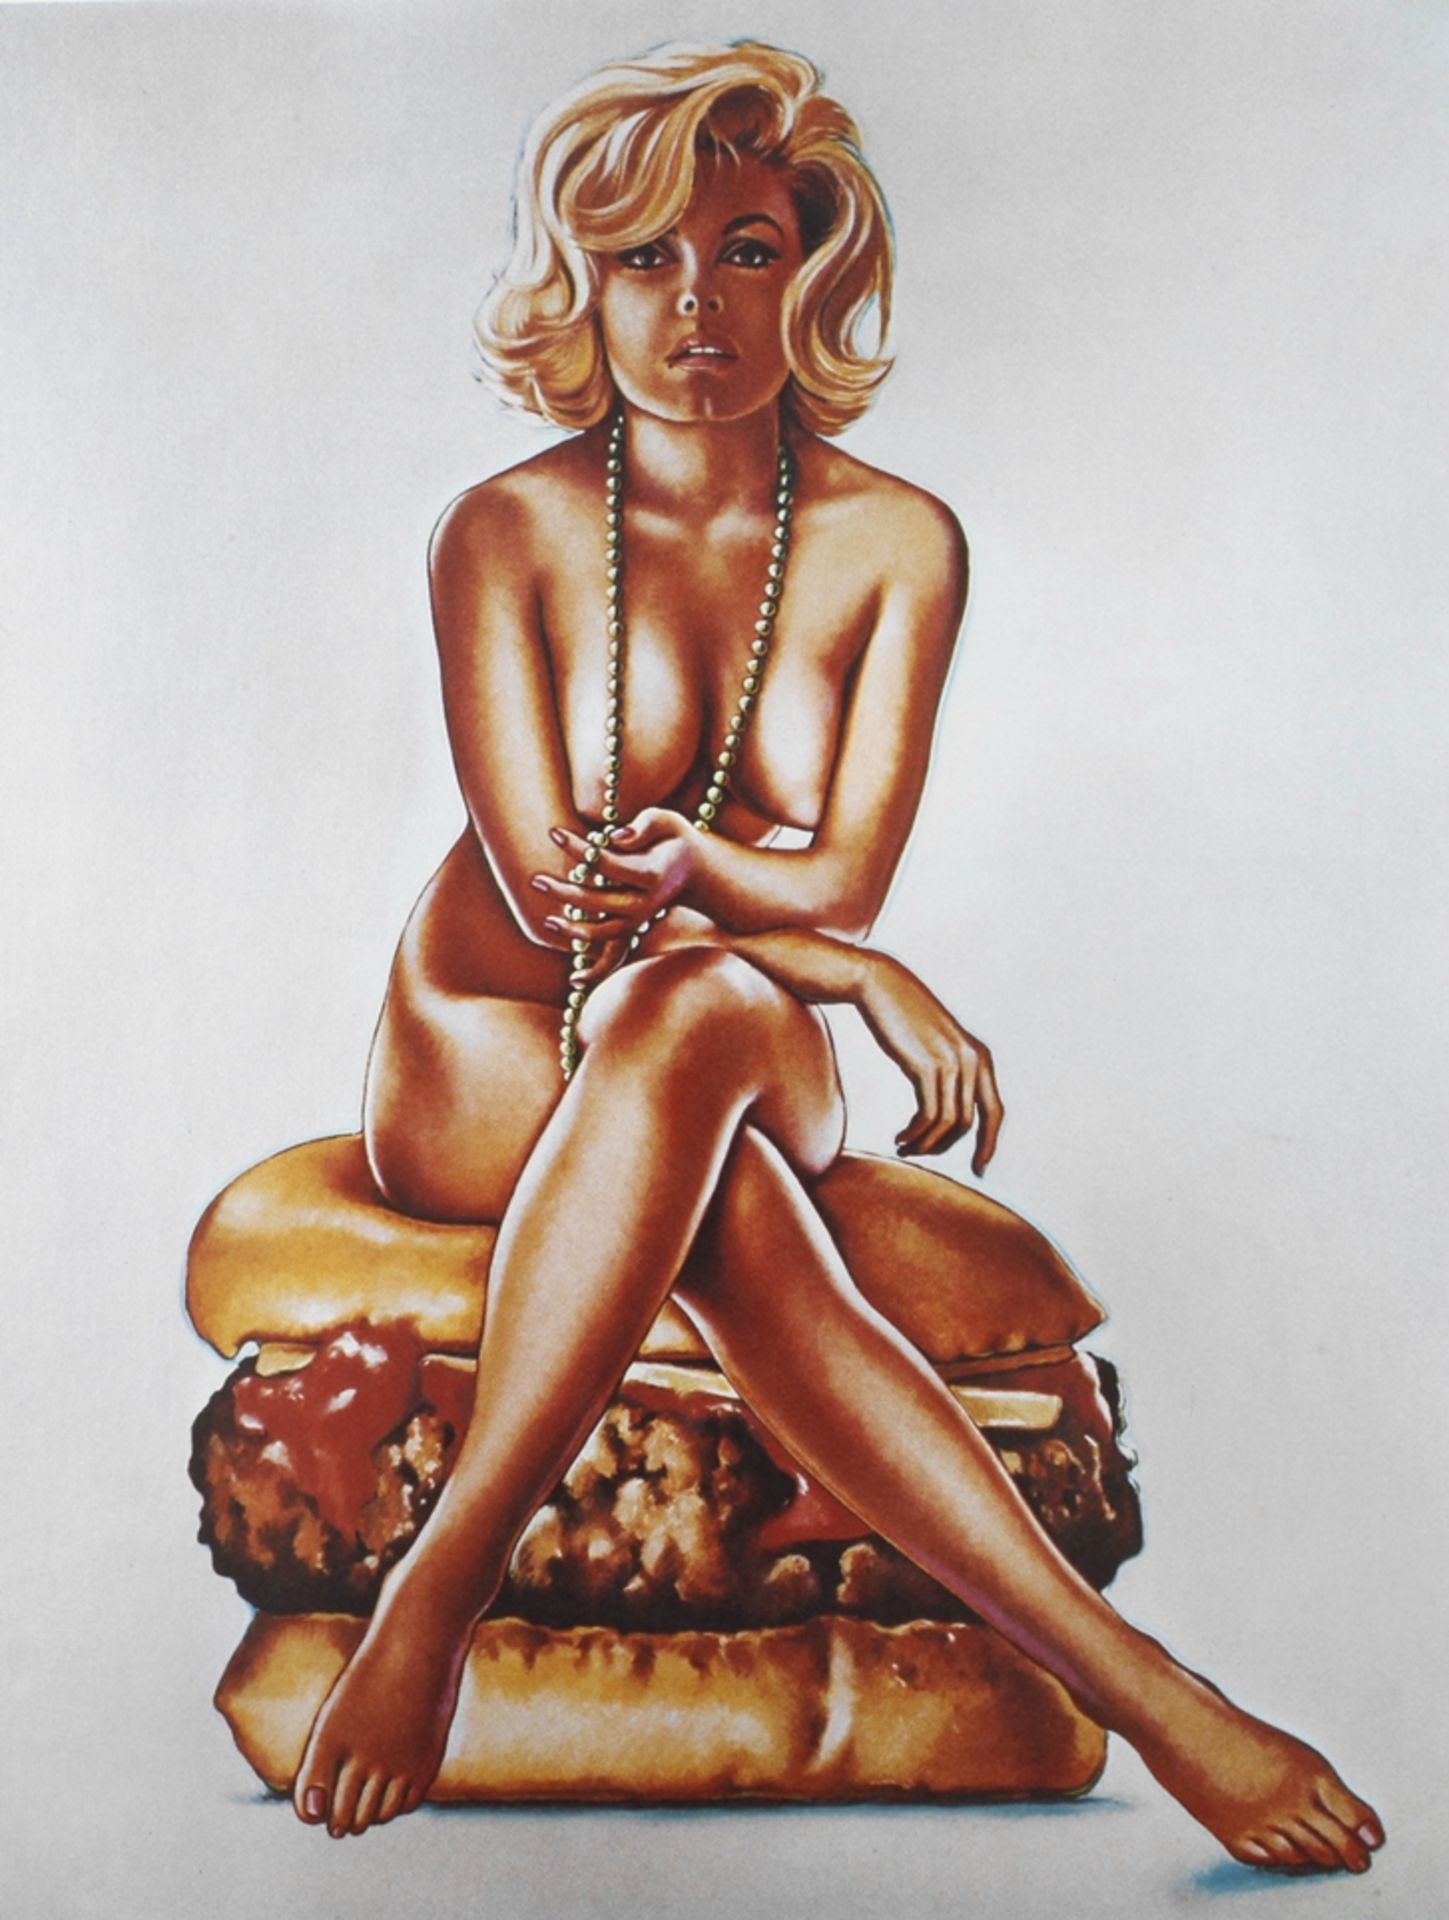 Mel Ramos, "Virnaburger" nackte, auf einem Cheeseburger sitzende junge Frau, an einer langen